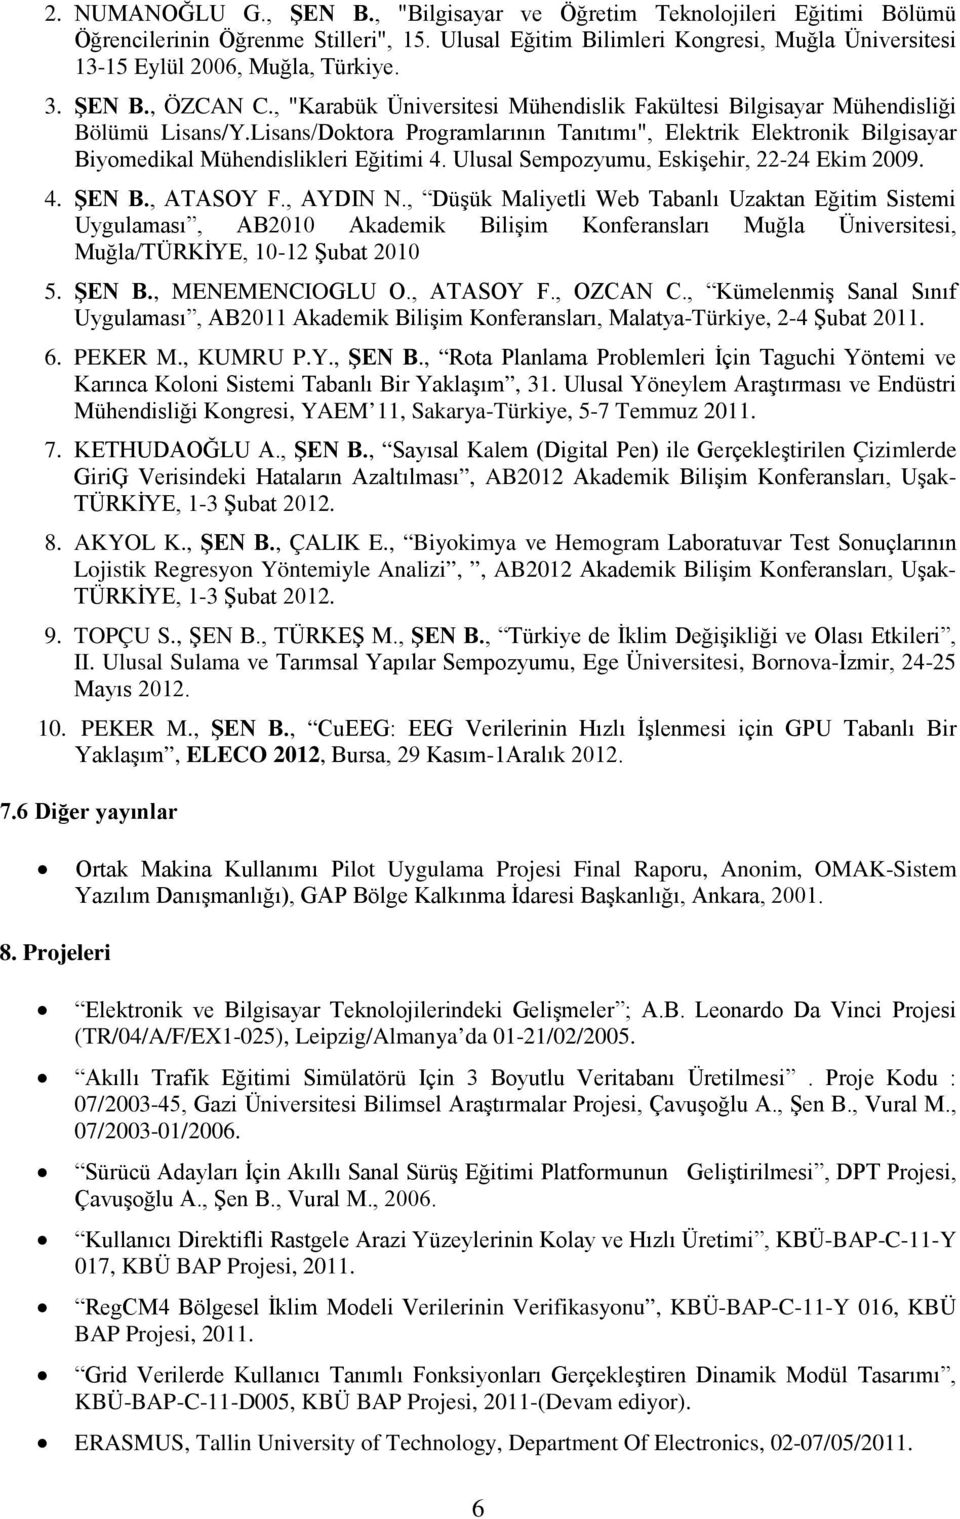 Lisans/Doktora Programlarının Tanıtımı", Elektrik Elektronik Bilgisayar Biyomedikal Mühendislikleri Eğitimi 4. Ulusal Sempozyumu, Eskişehir, 22-24 Ekim 2009. 4. ŞEN B., ATASOY F., AYDIN N.